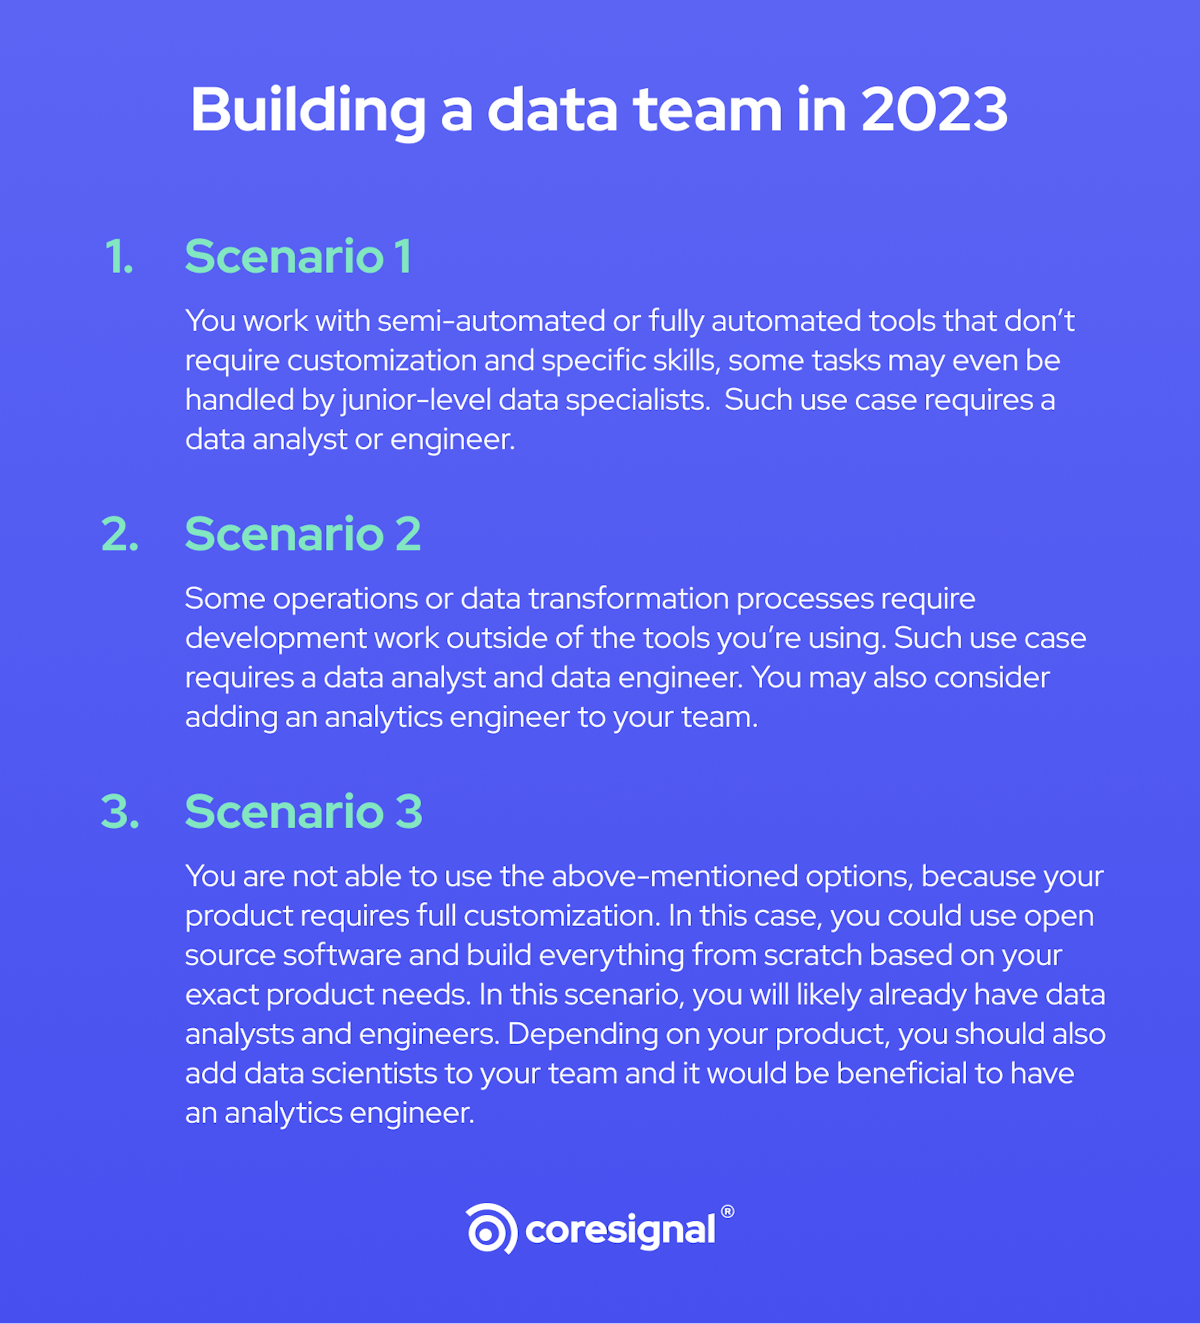 data team building scenario